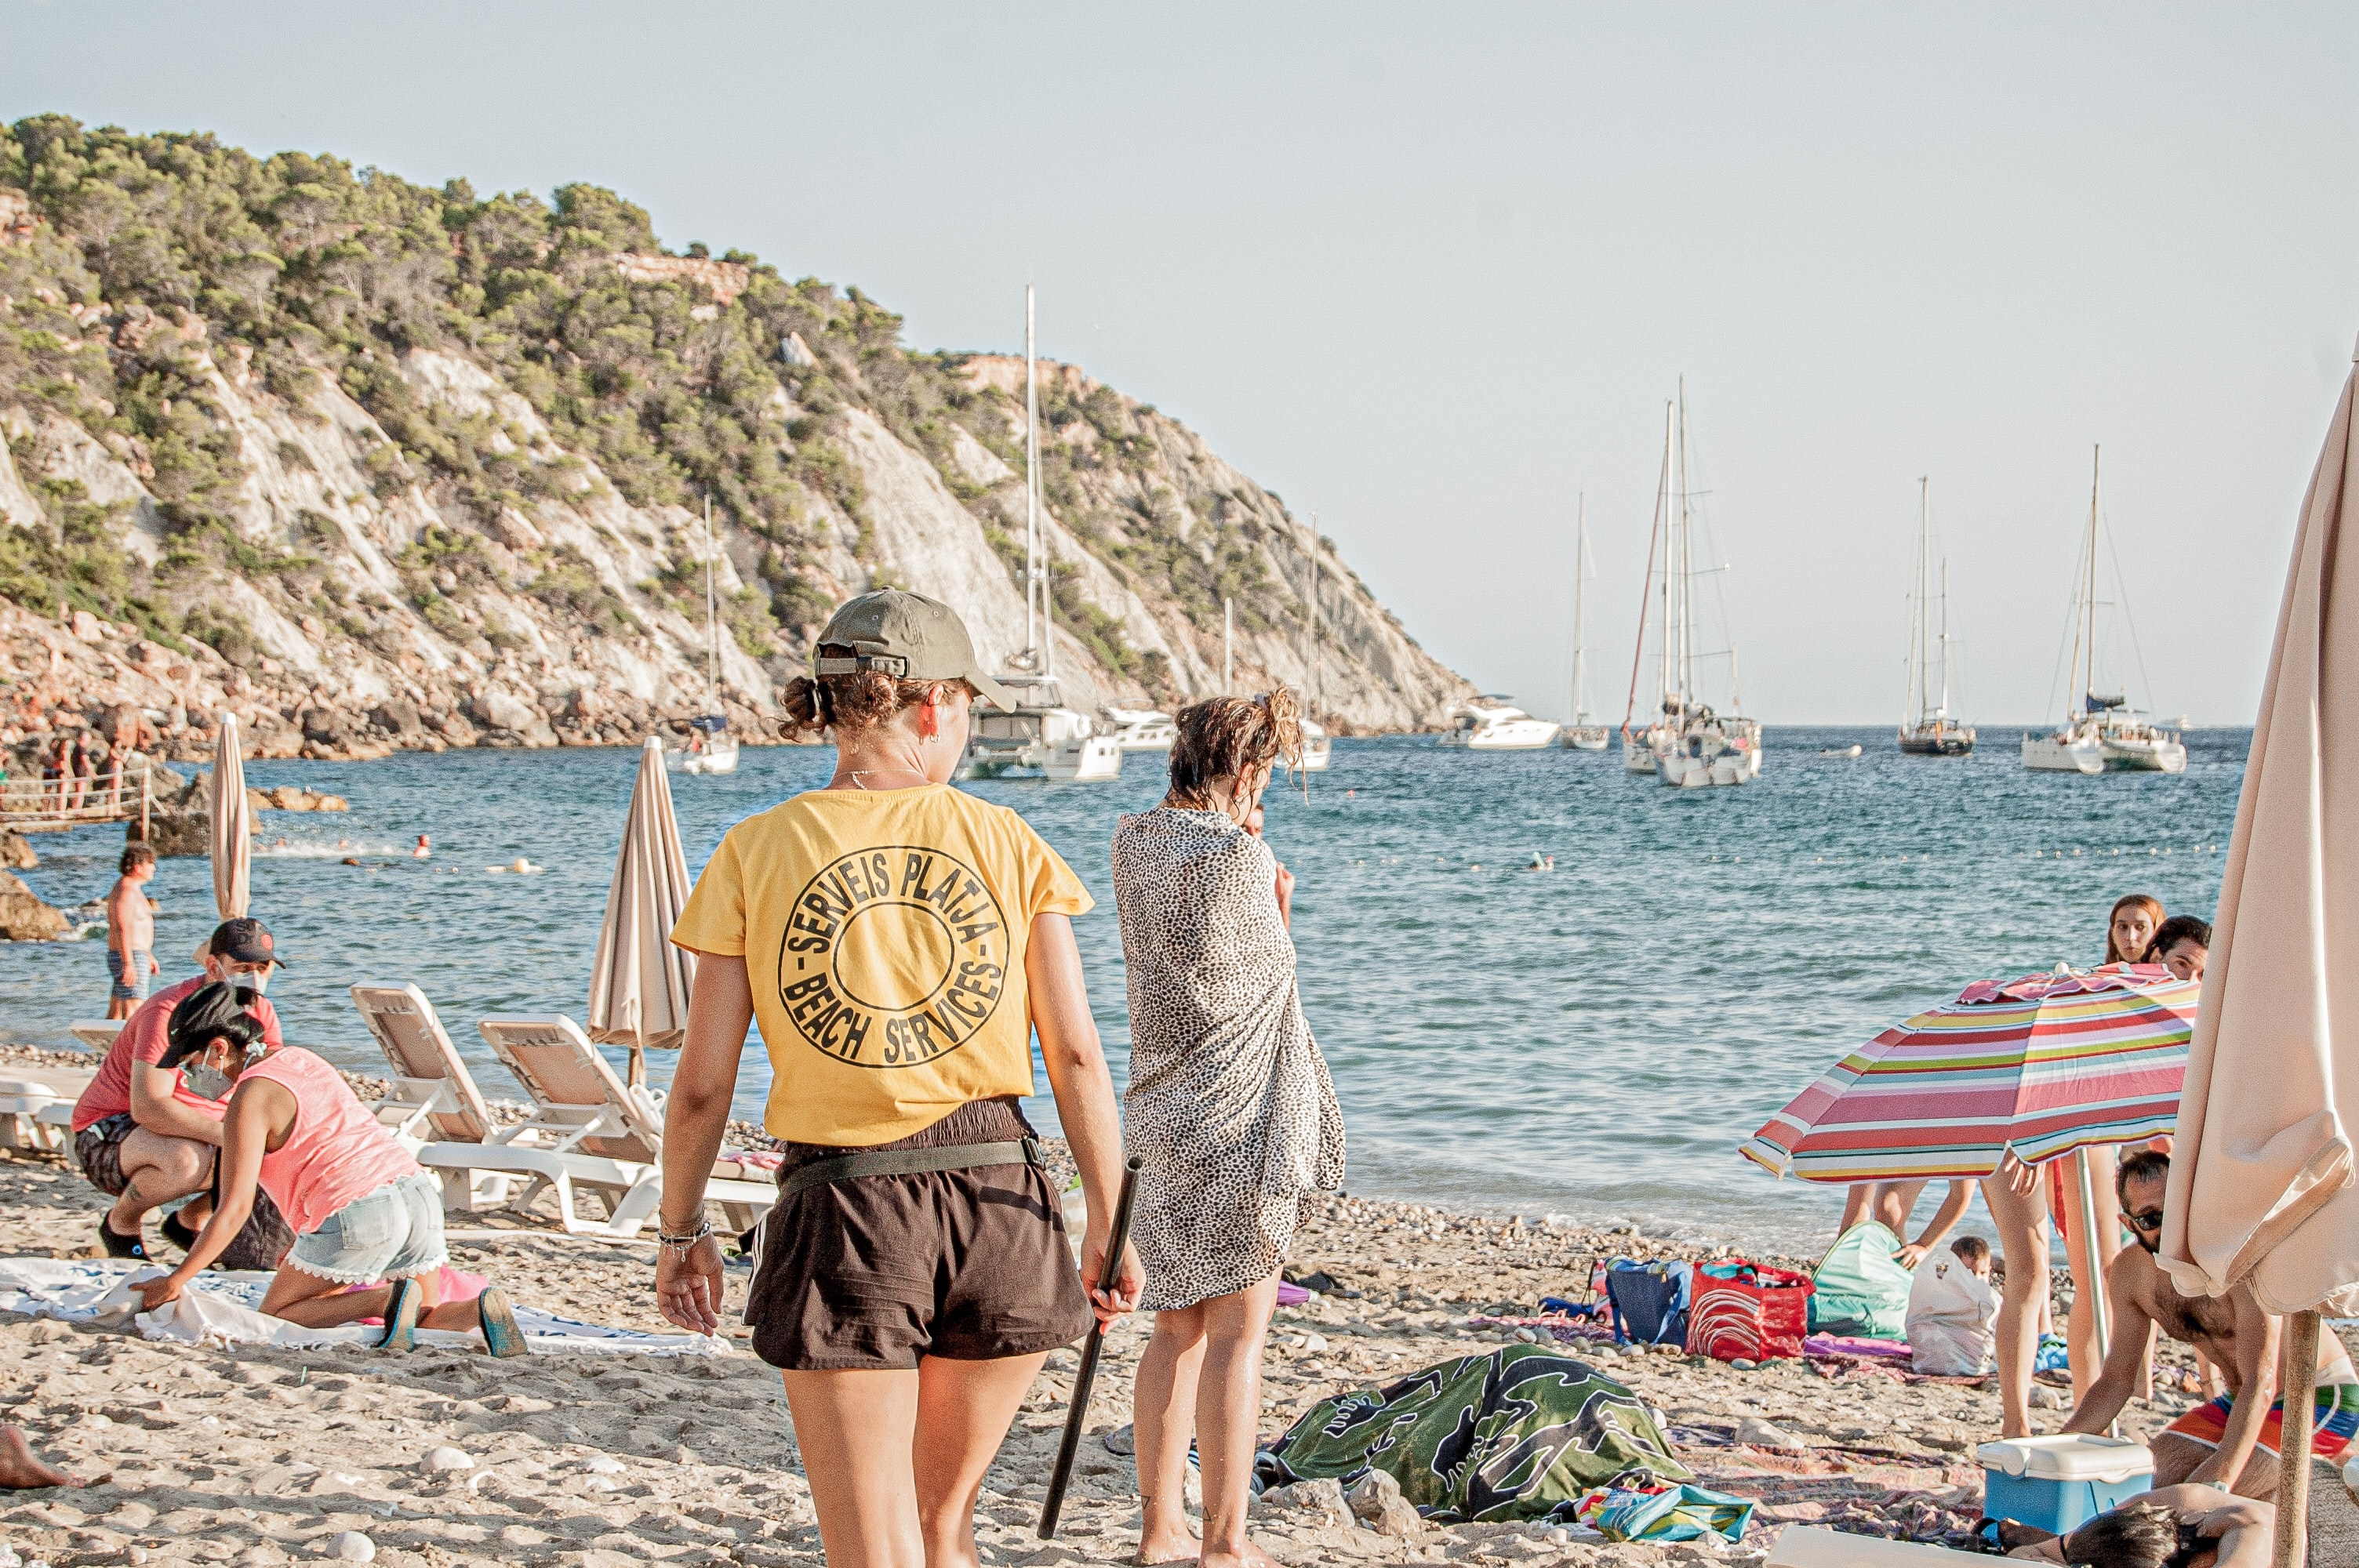 Servicio de playa en Ibiza. Unsplash